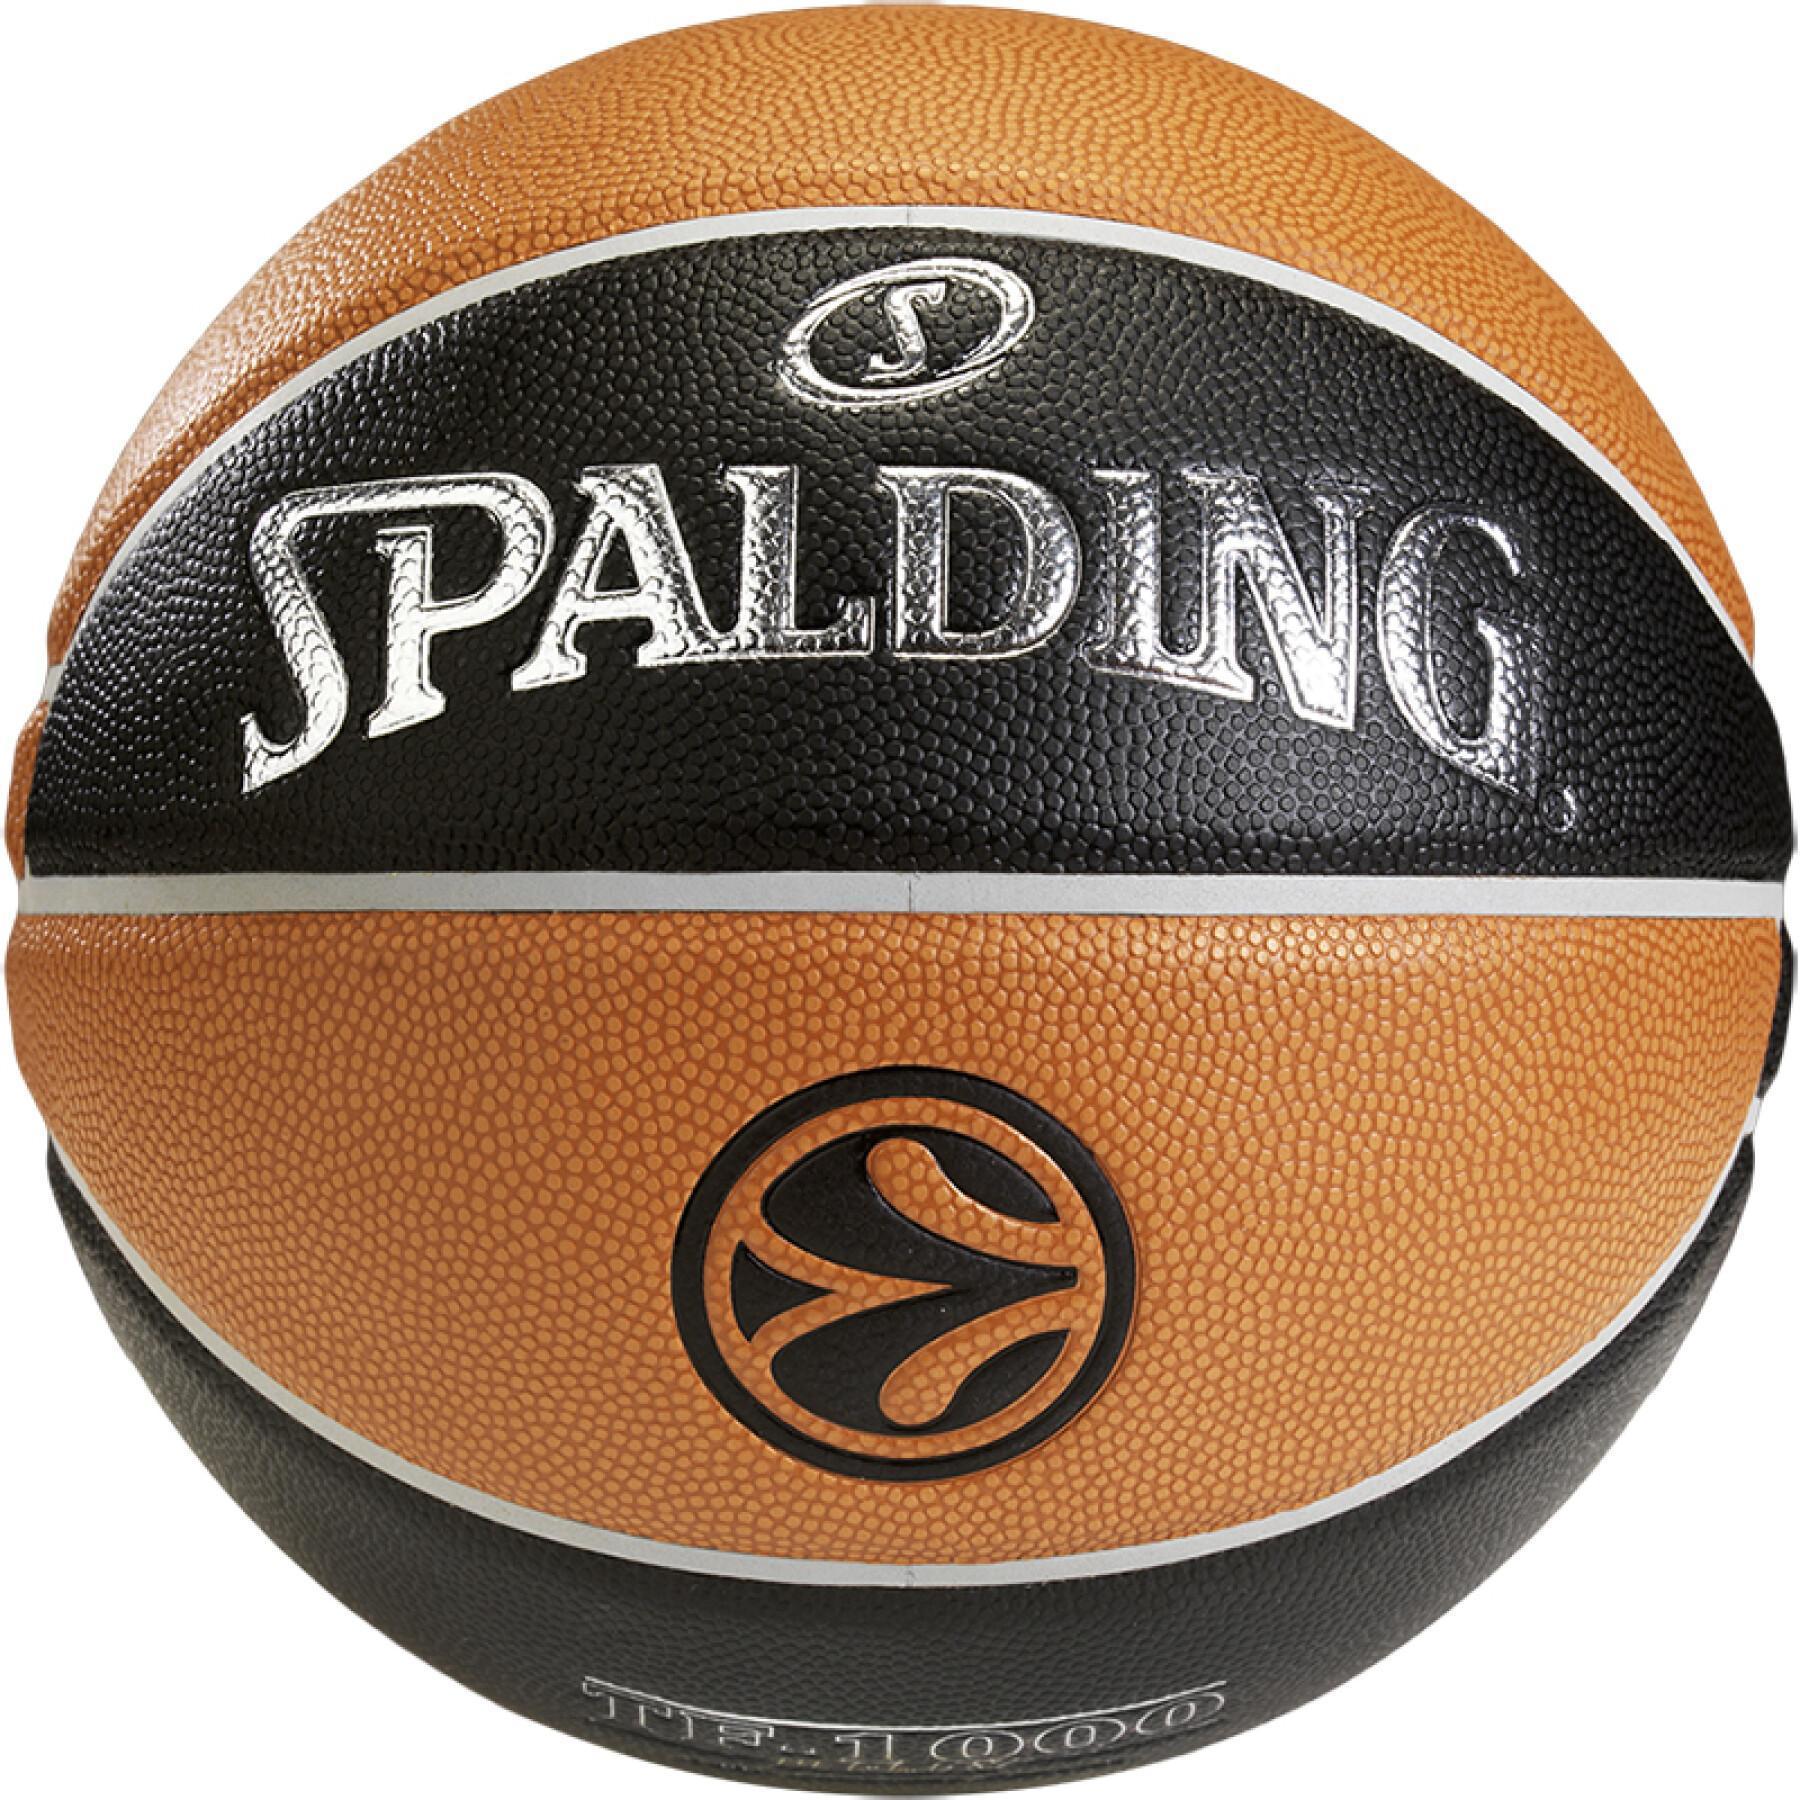 Balon Spalding Euroleague TF 1000 Legacy